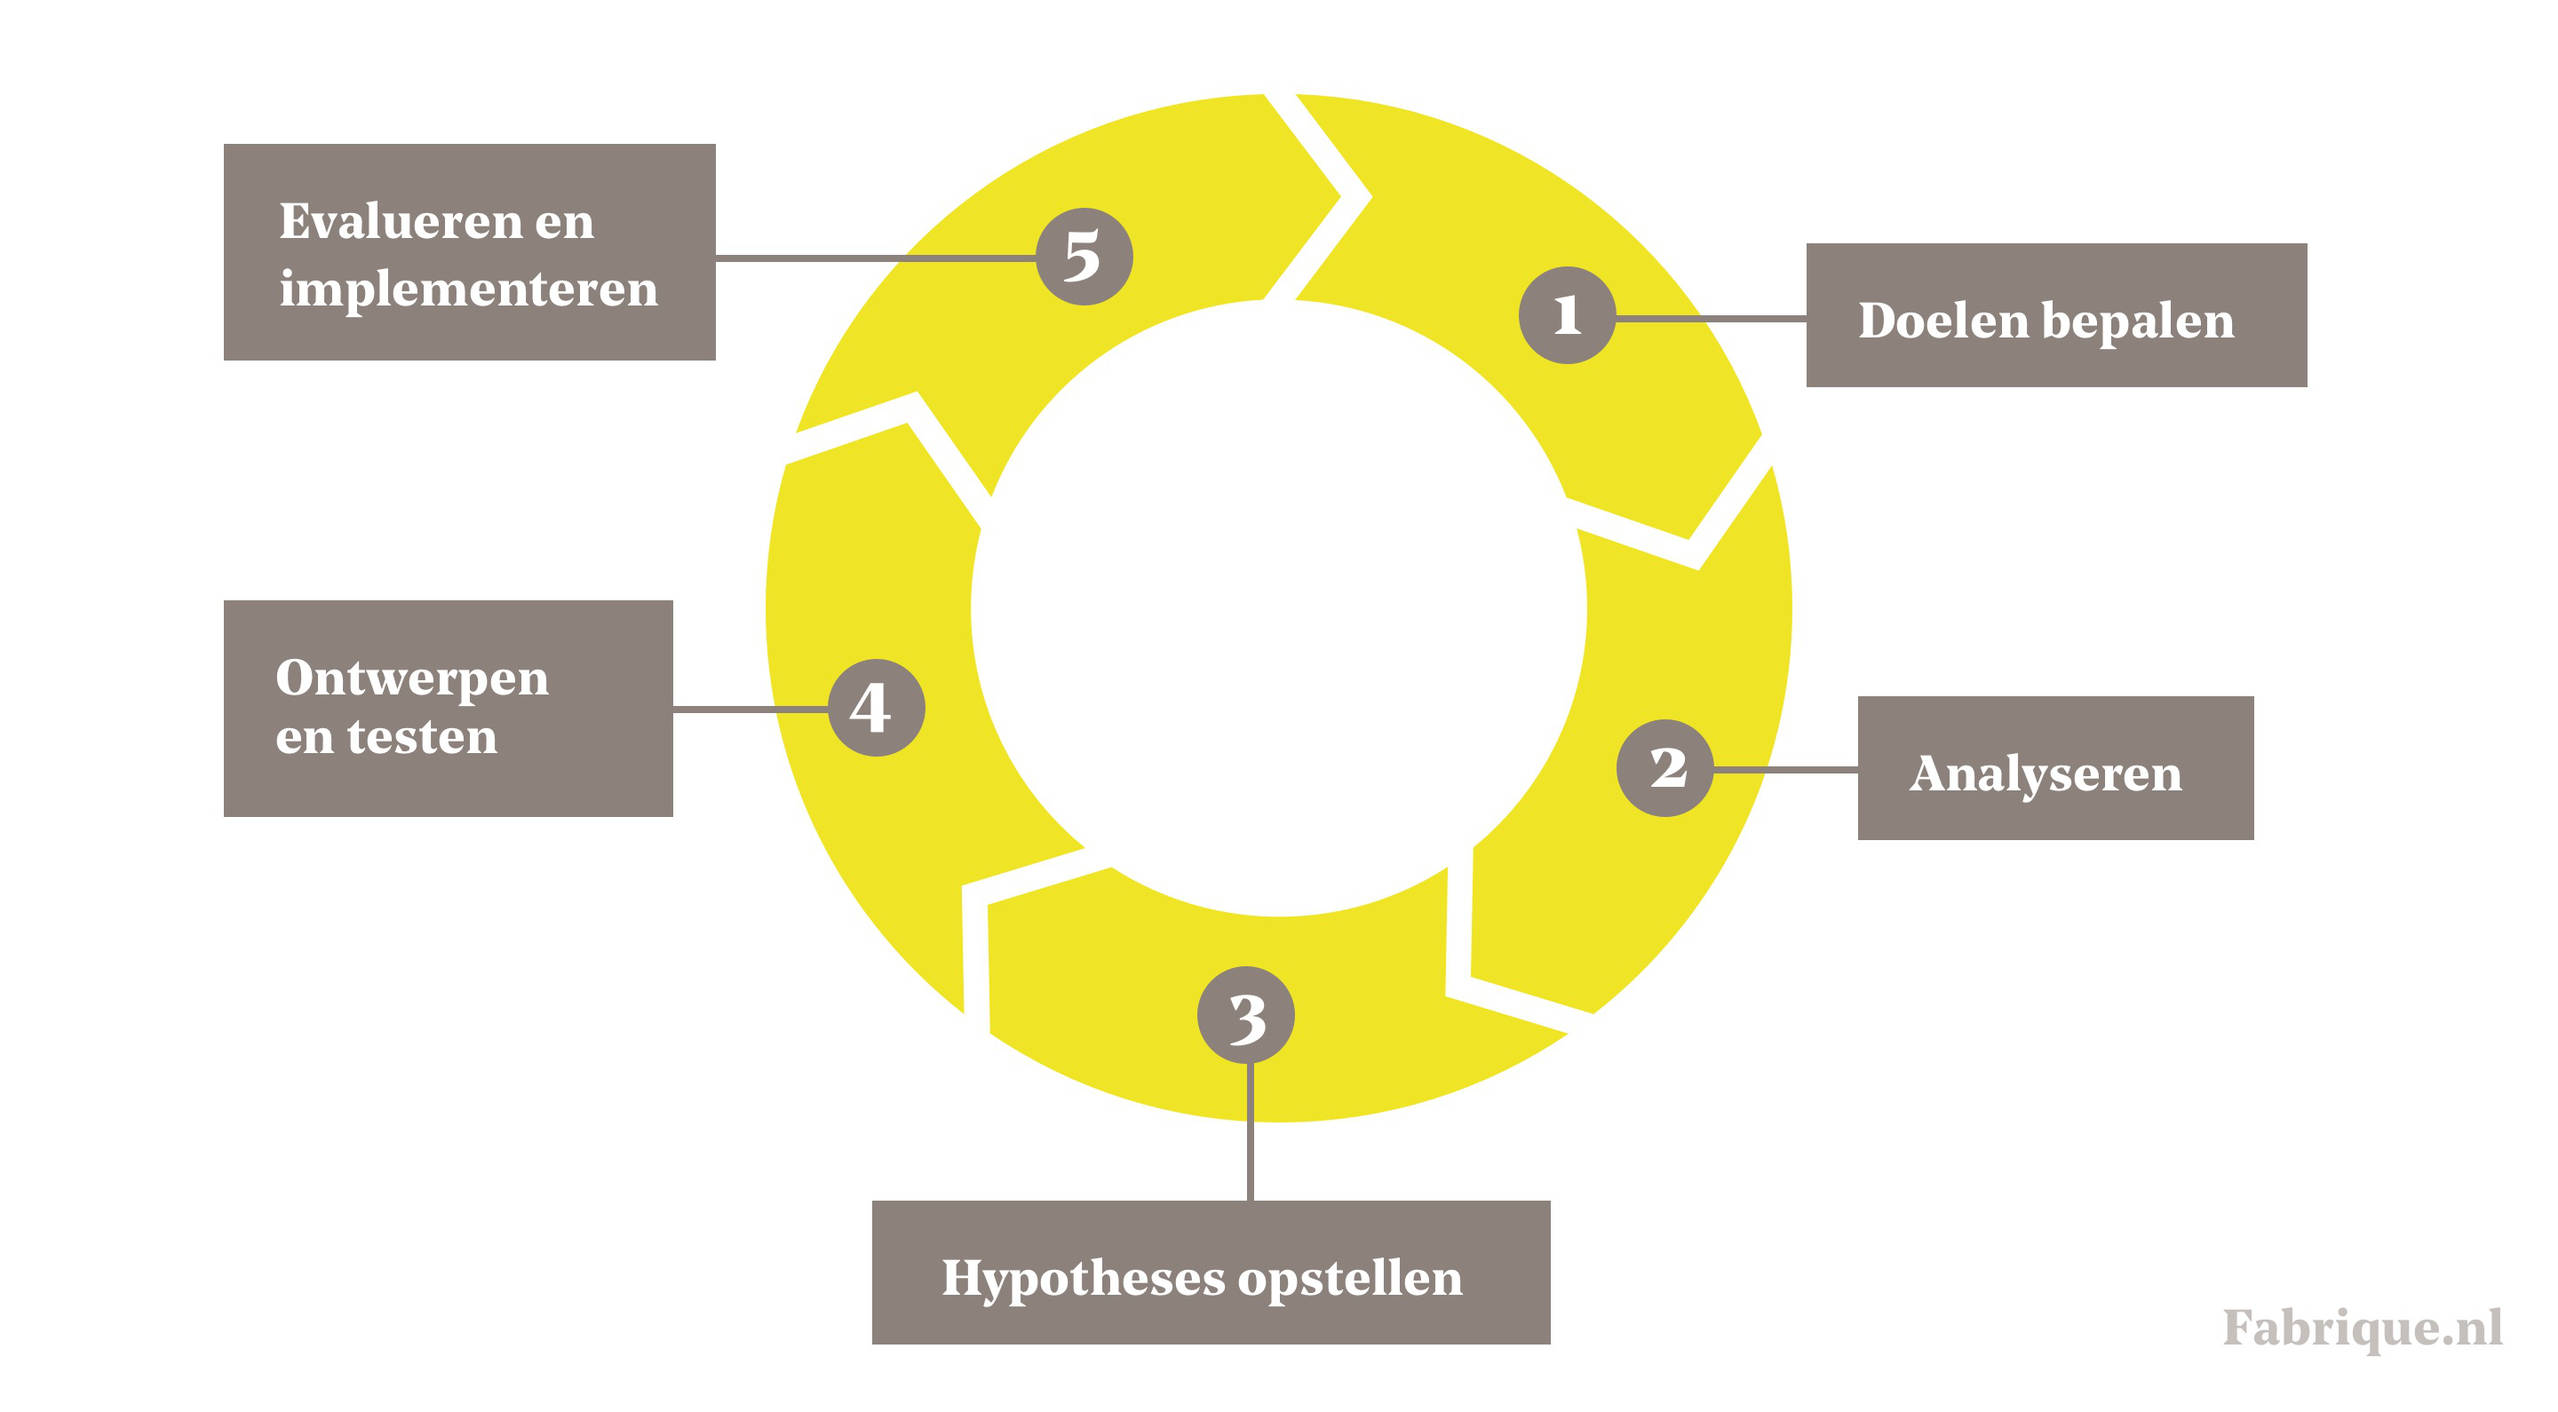 Schema van een conversie optimalisatie cyclus. CRO stappen: doelen bepalen, analyseren, hypotheses opstellen, ontwerpen en testen, evalueren.